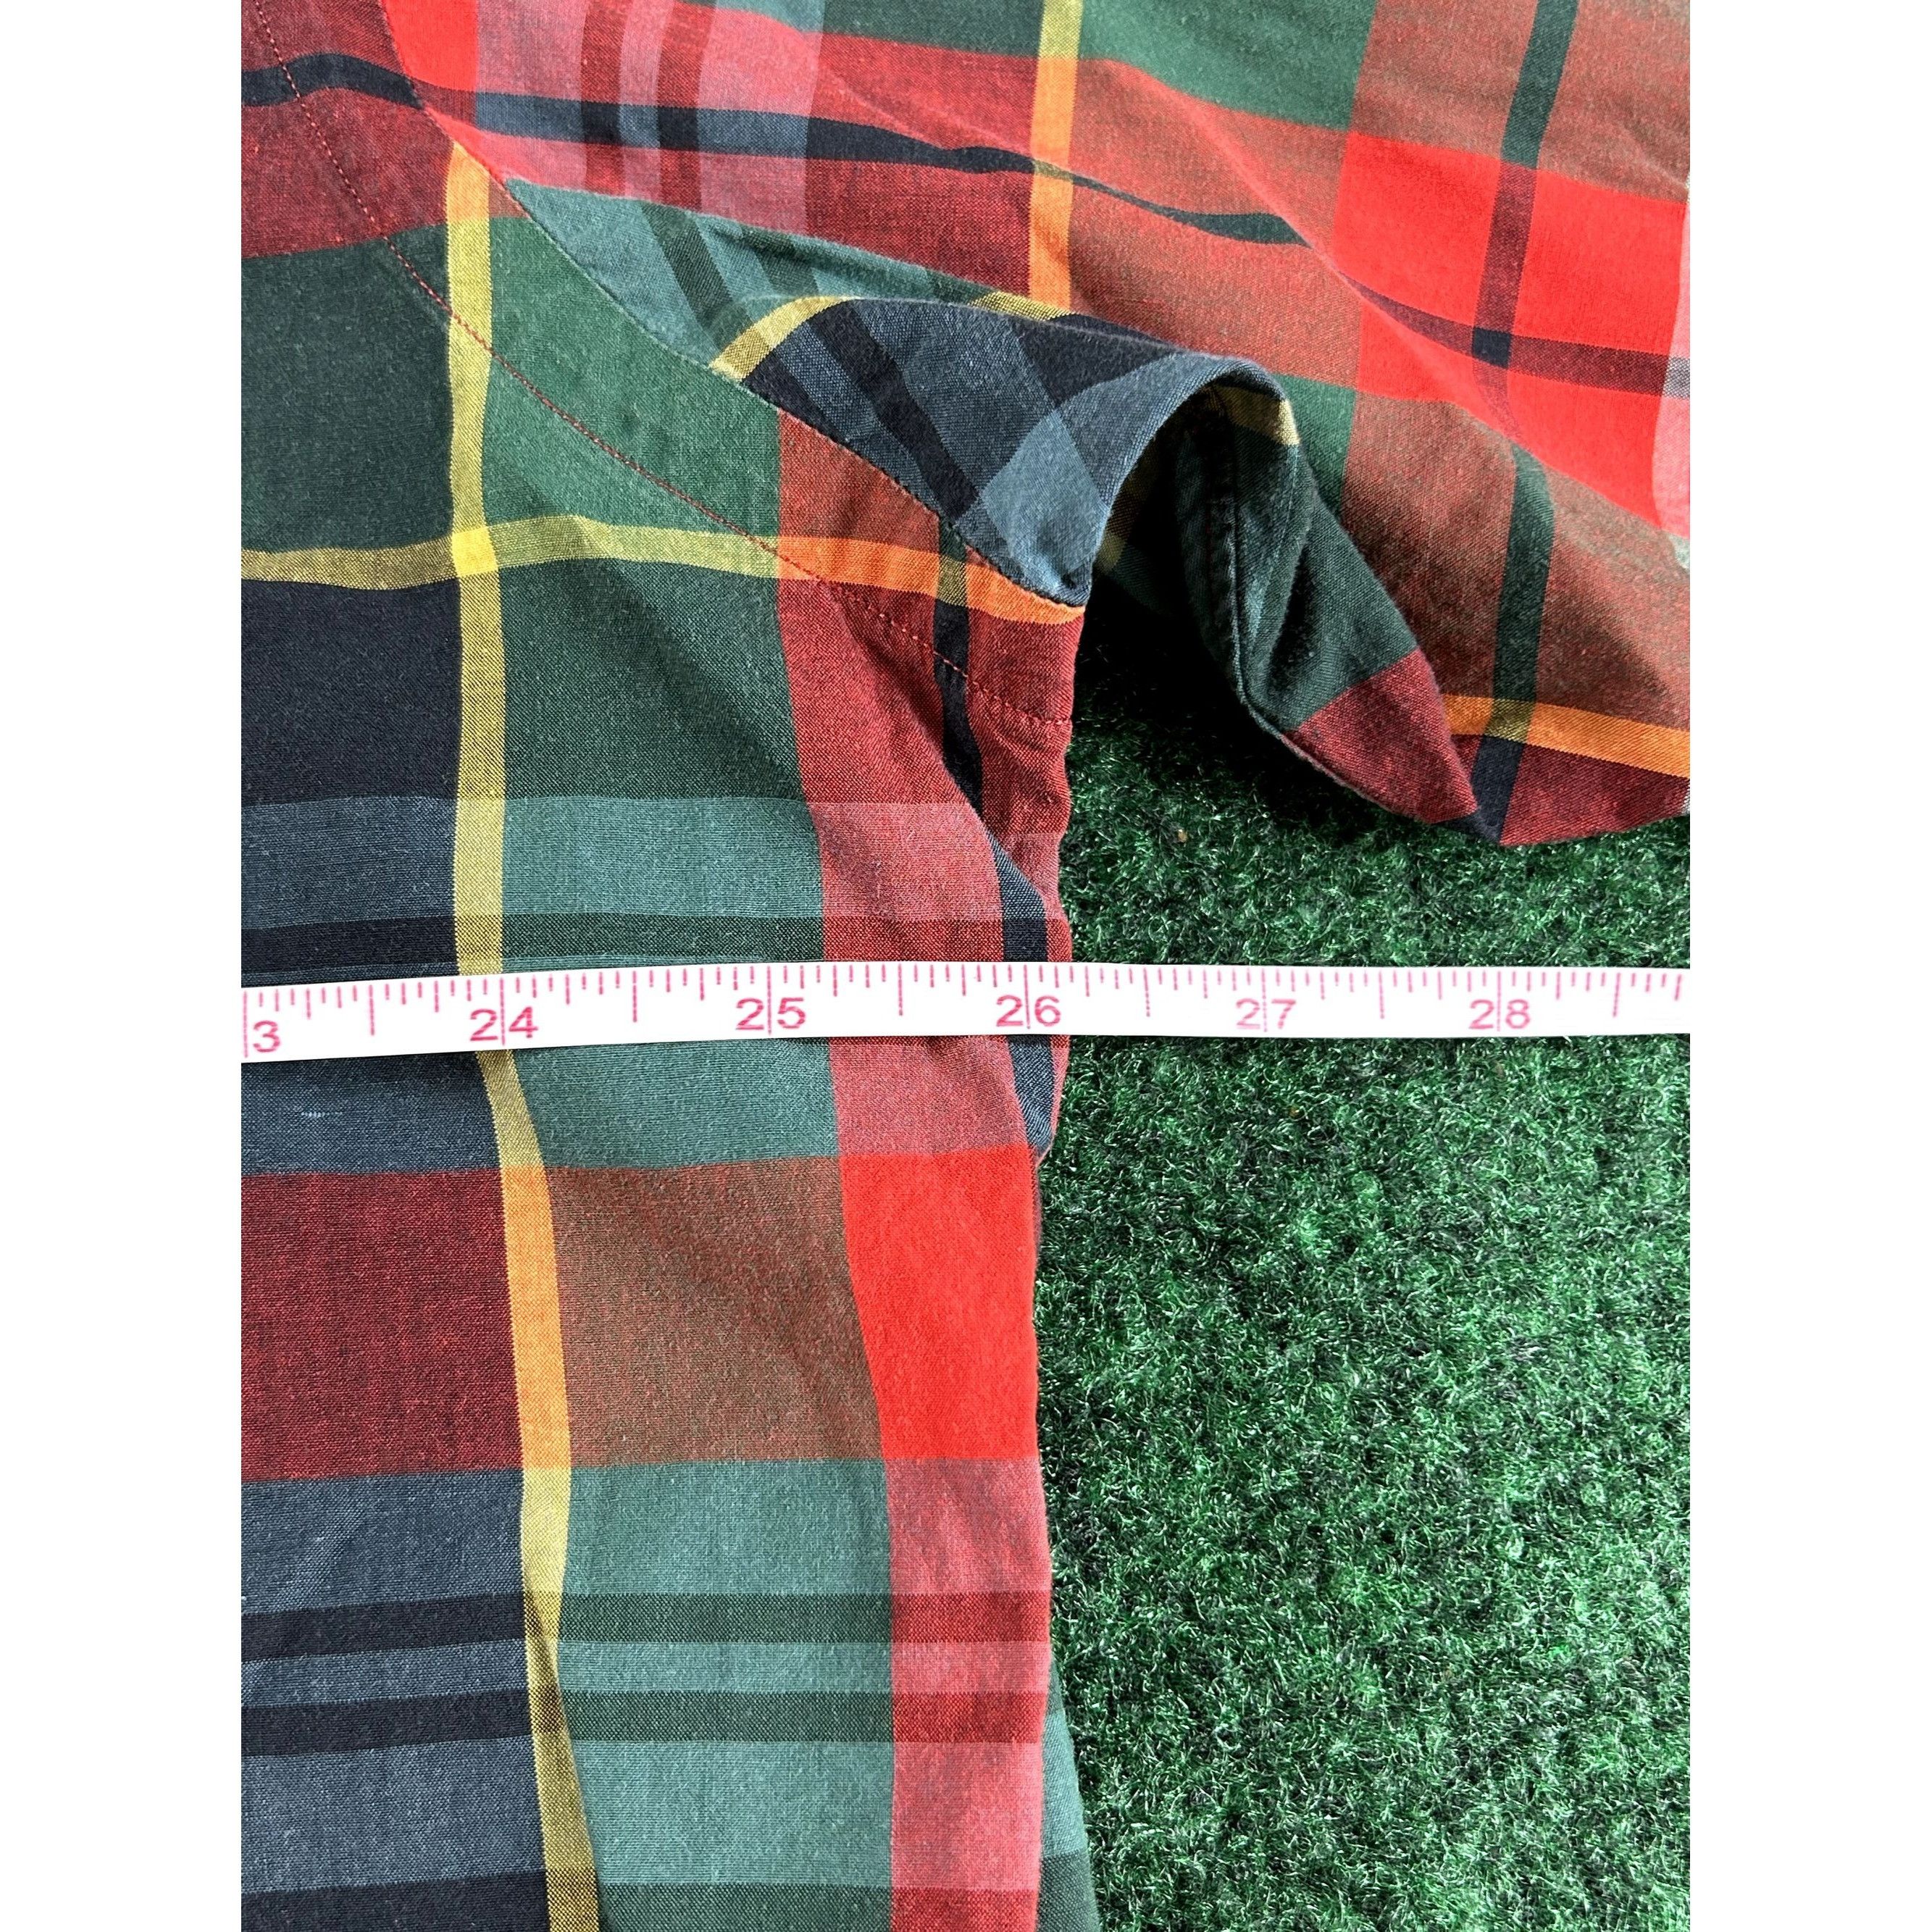 Ralph Lauren Ralph Lauren Red & Green Plaid Long Sleeve Button Down Shirt Size US L / EU 52-54 / 3 - 5 Thumbnail